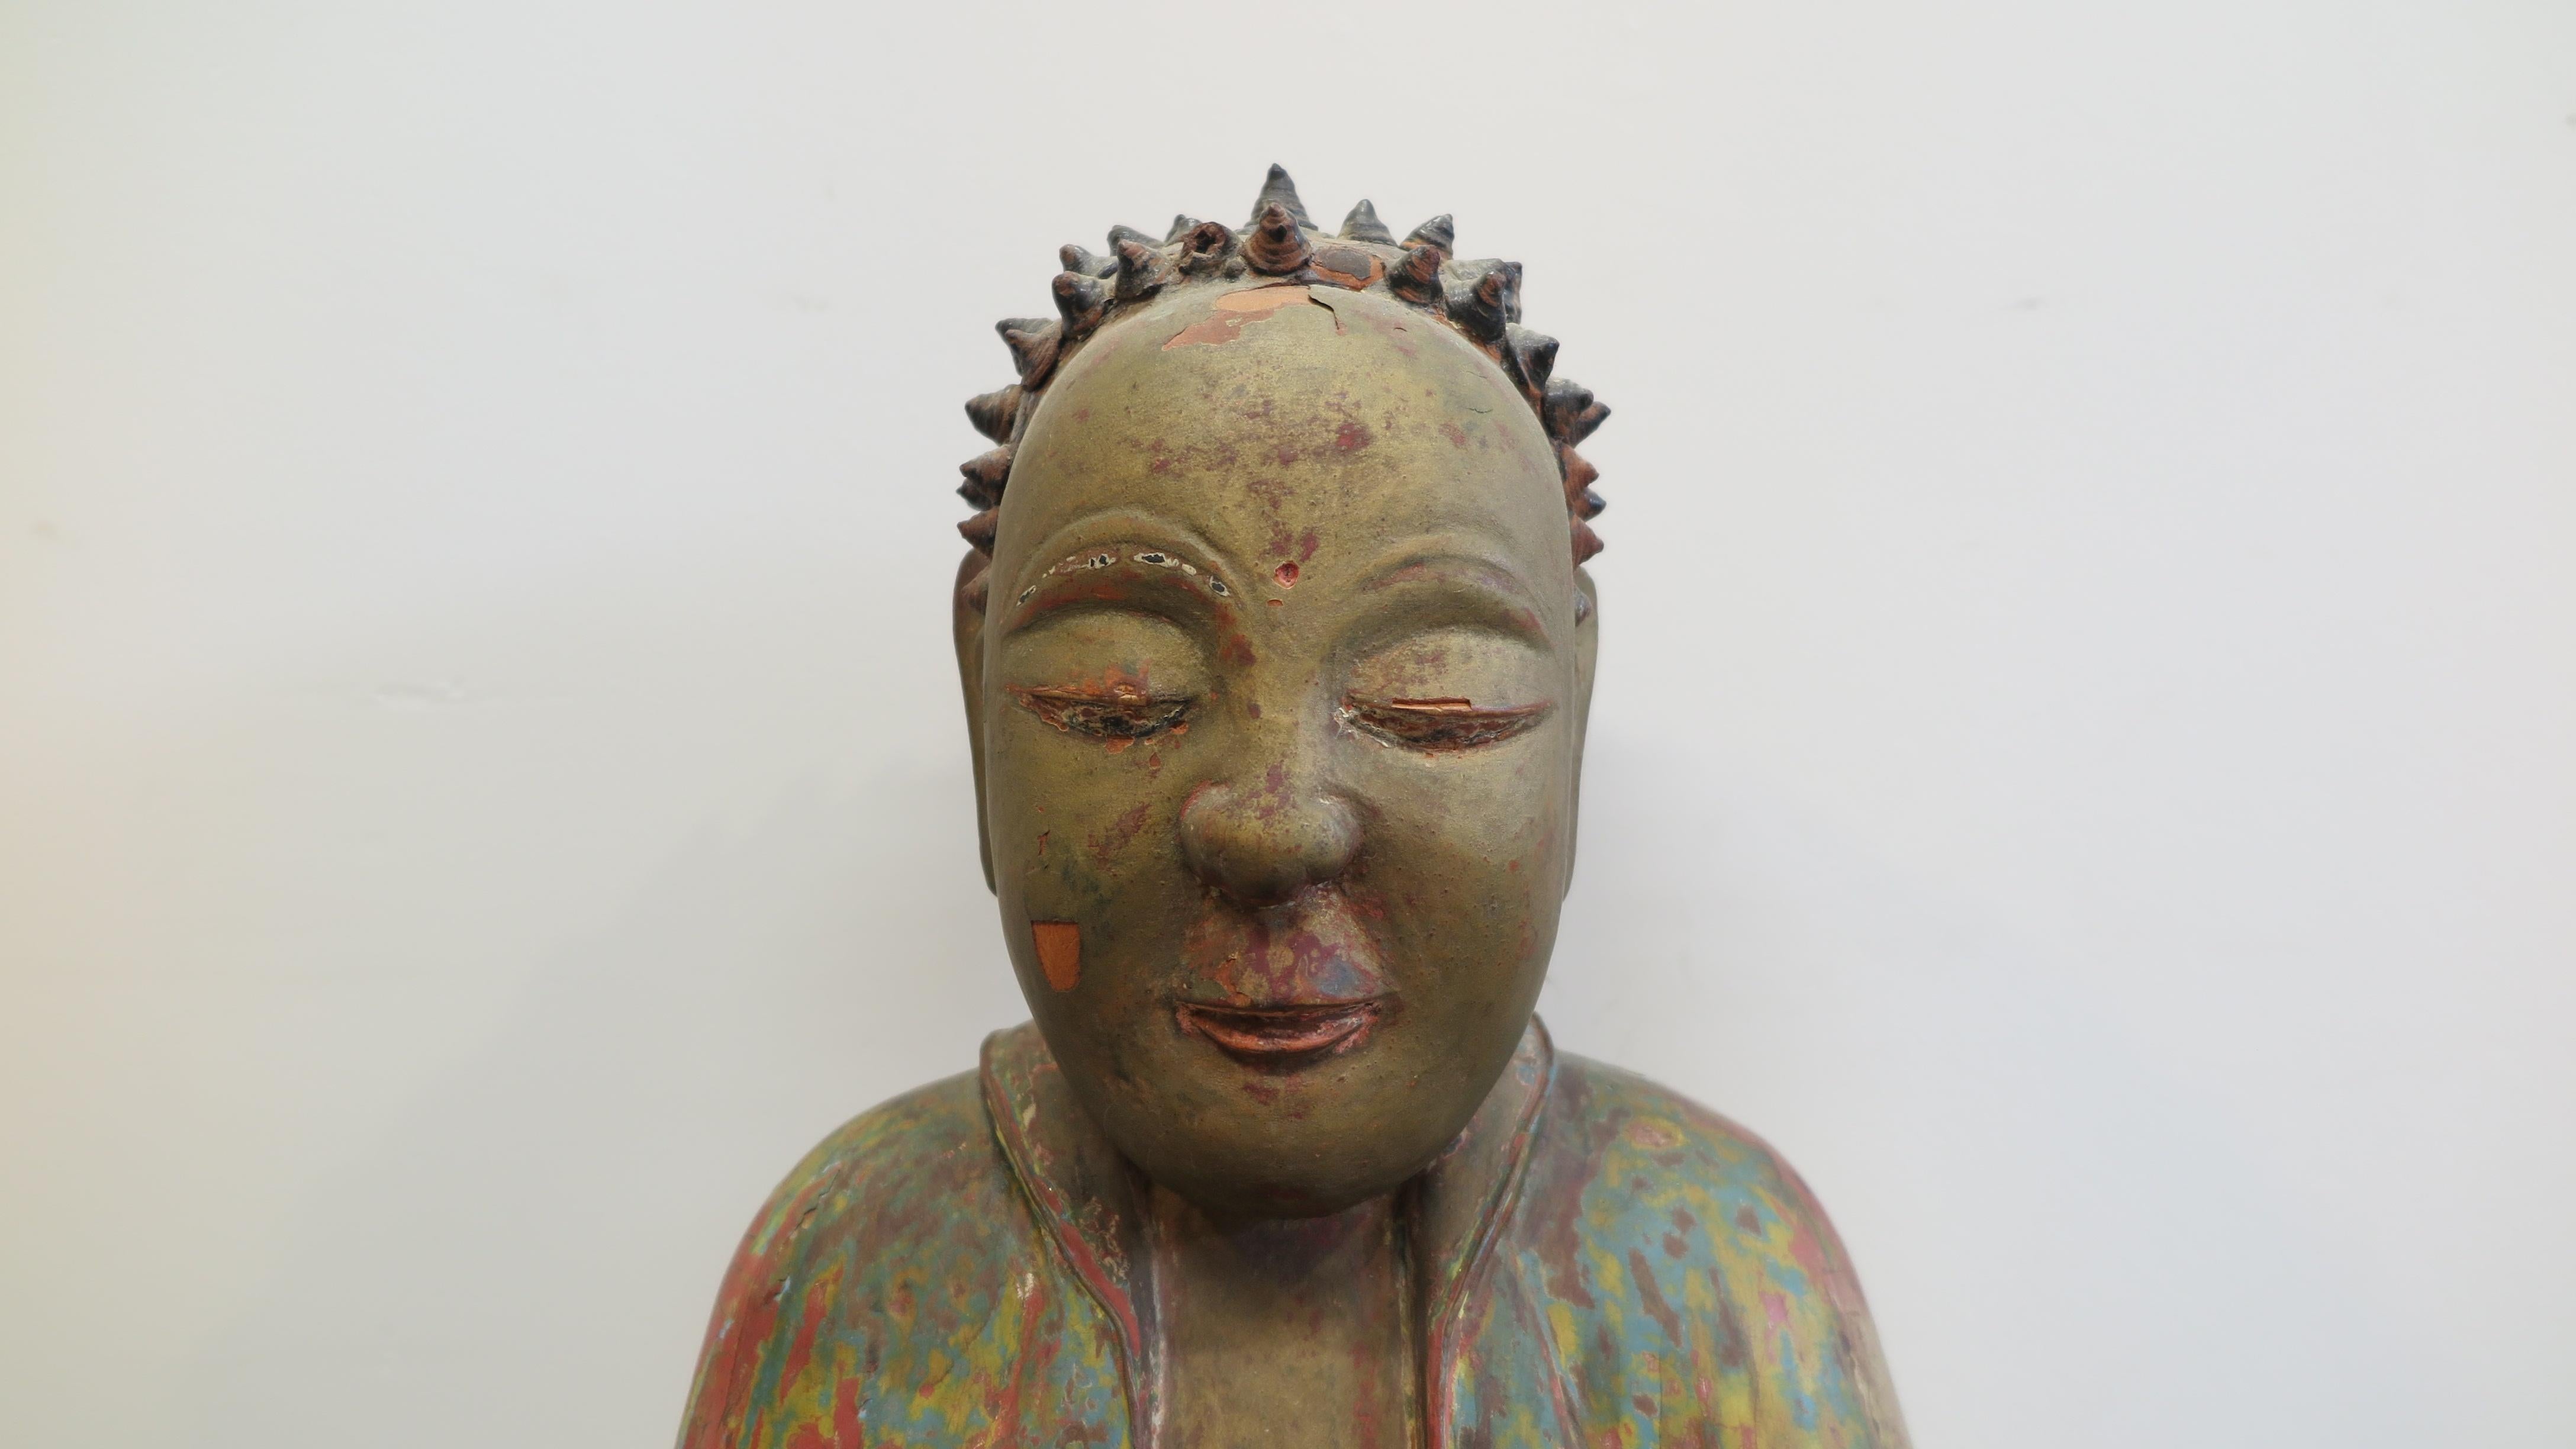 Geschnitzter Holzbuddha aus dem 18. Jahrhundert.  Chinesische antike Buddha-Statue aus geschnitztem Holz.  Gesso-ähnliche Beschichtung der Holzoberfläche, mit Pigmenten und Vergoldung.  Dry Lacquer konischen Hand geformt Kegel auf den Kopf, die das